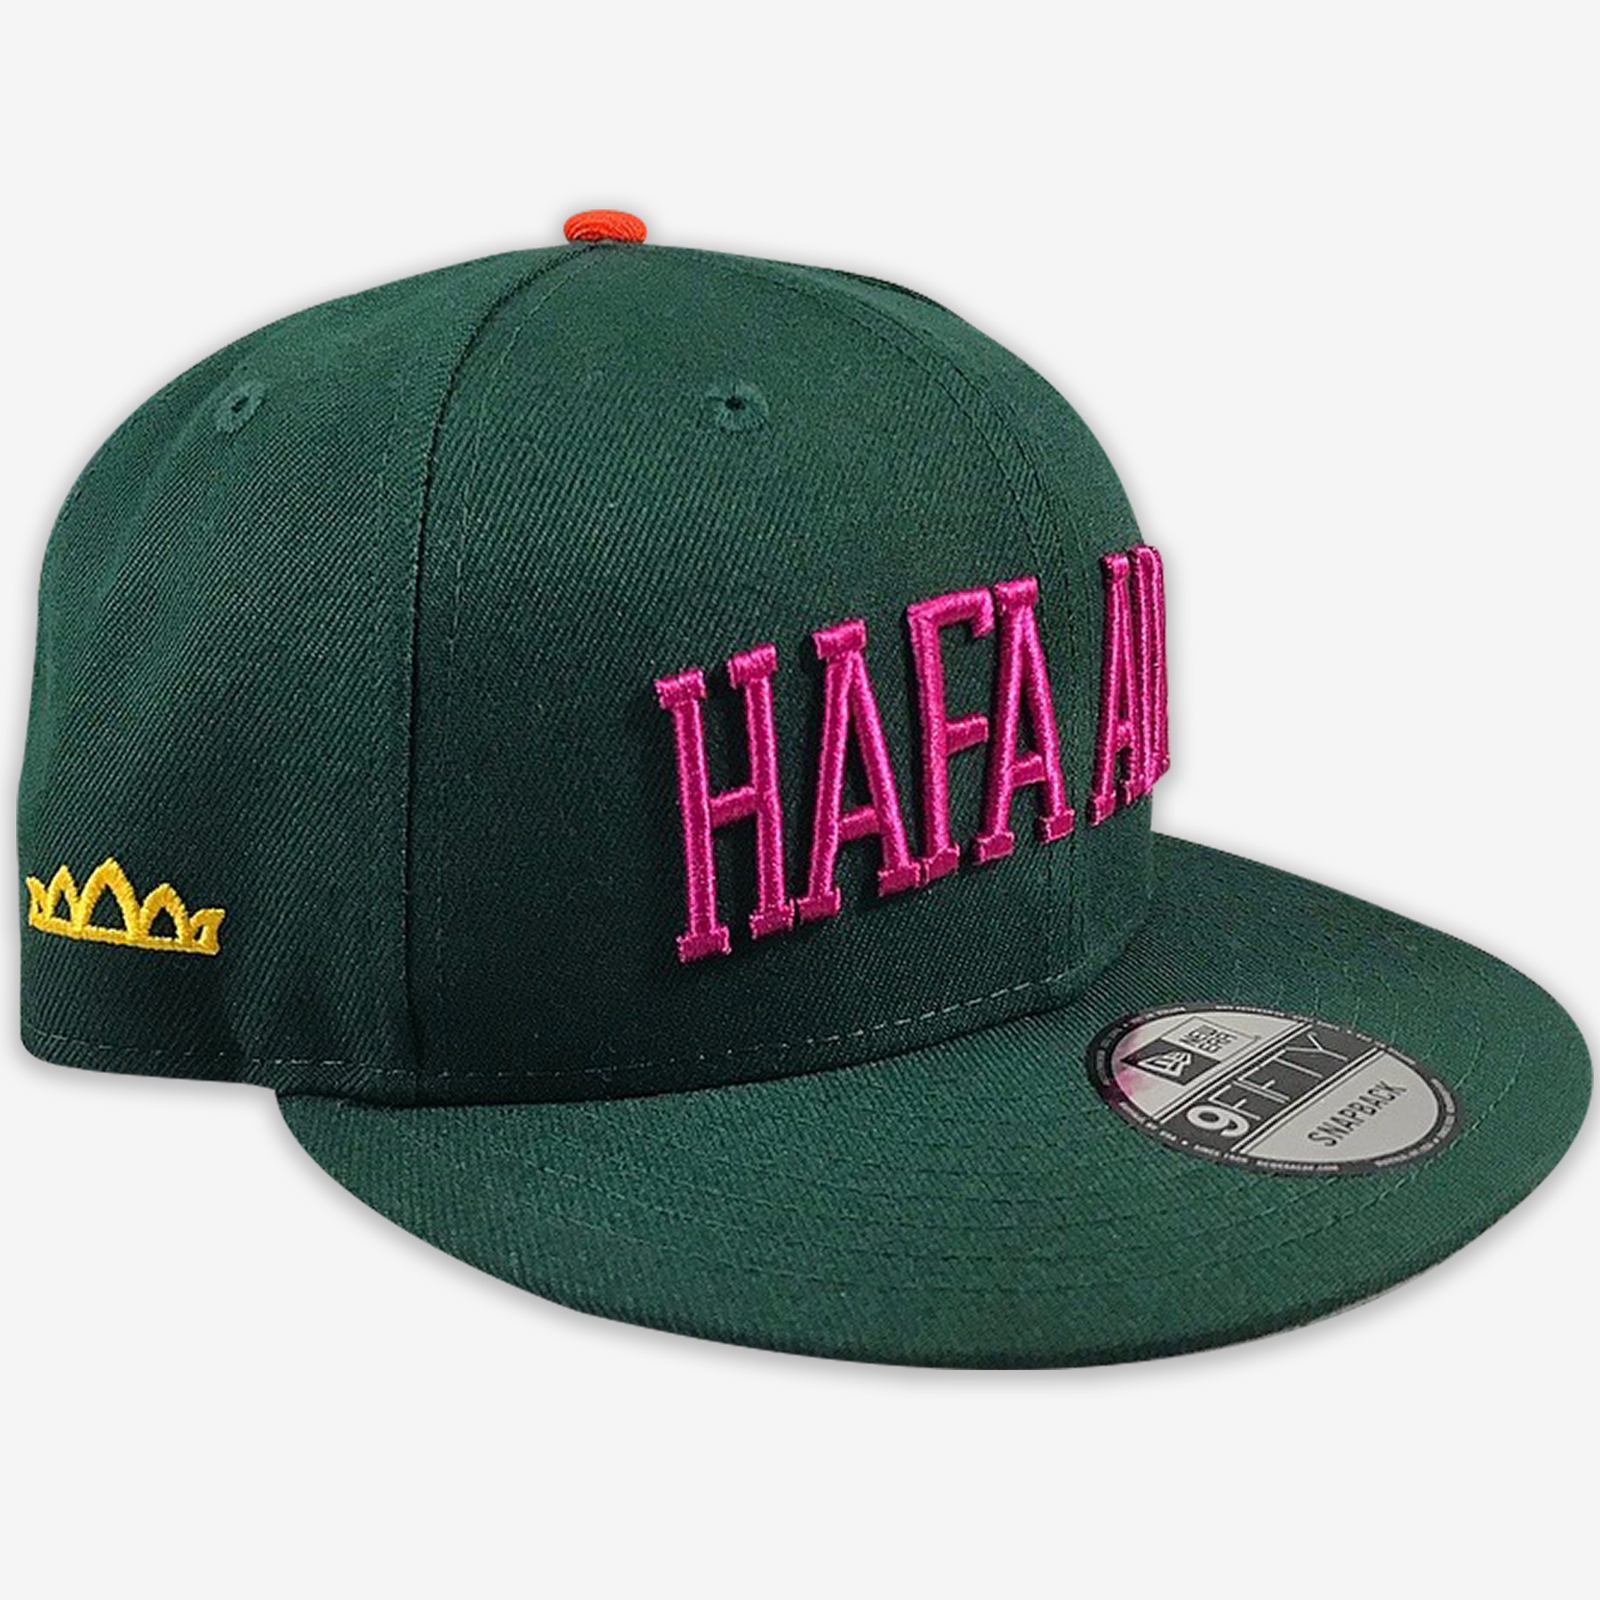 *Hafa Adai - AOF x Crowns Guam New Era Snapback